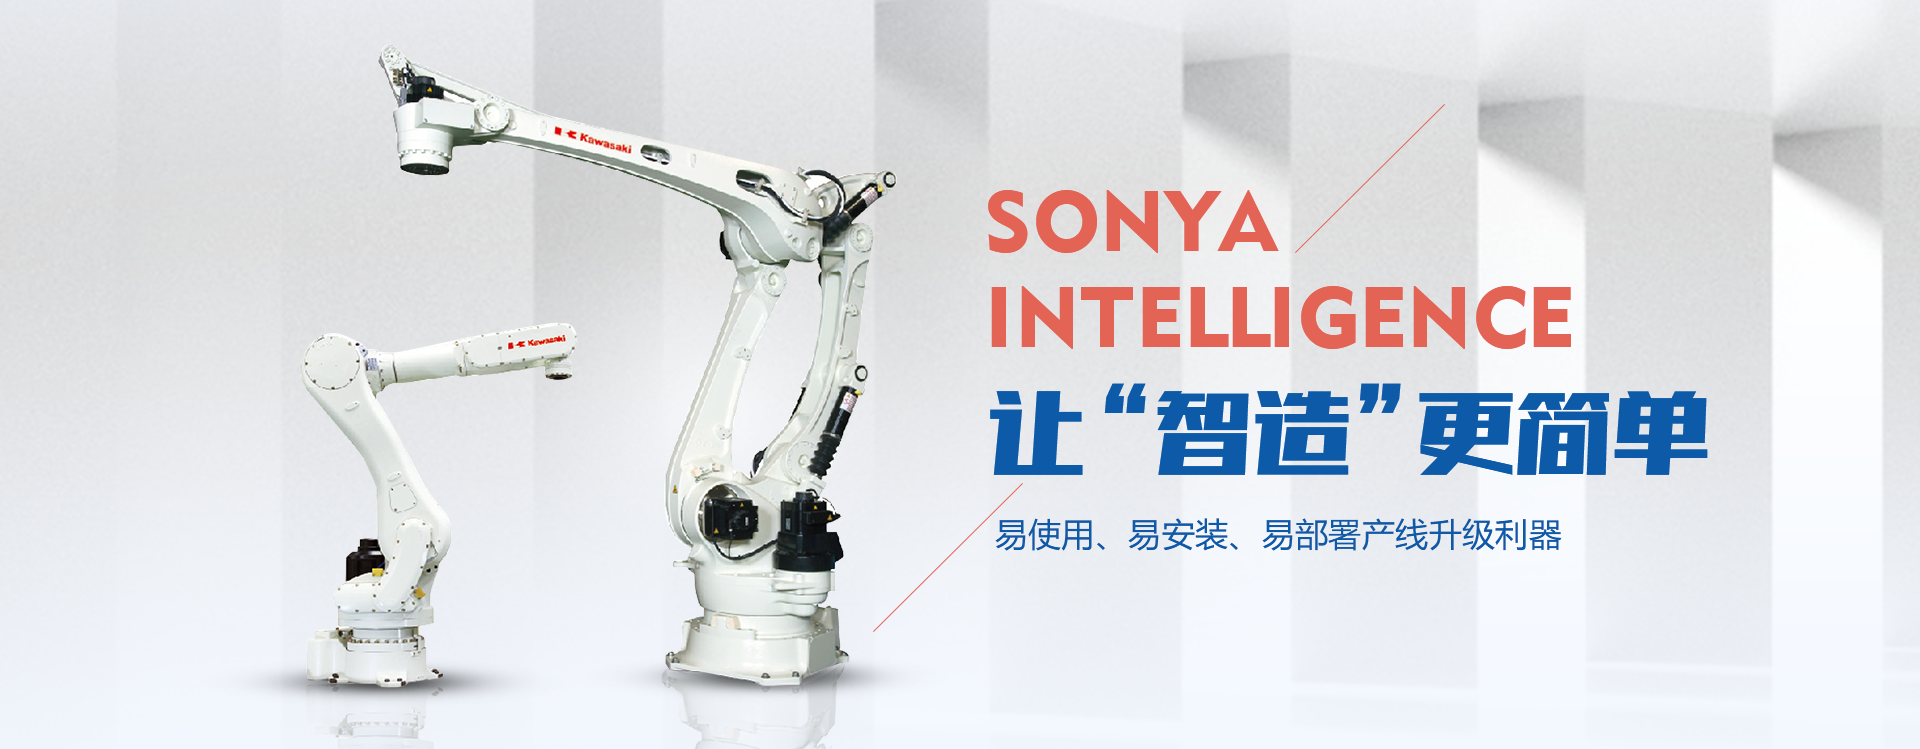 日本川崎机器人,松下机器人厂家,自动焊接机器人,自动化机器人